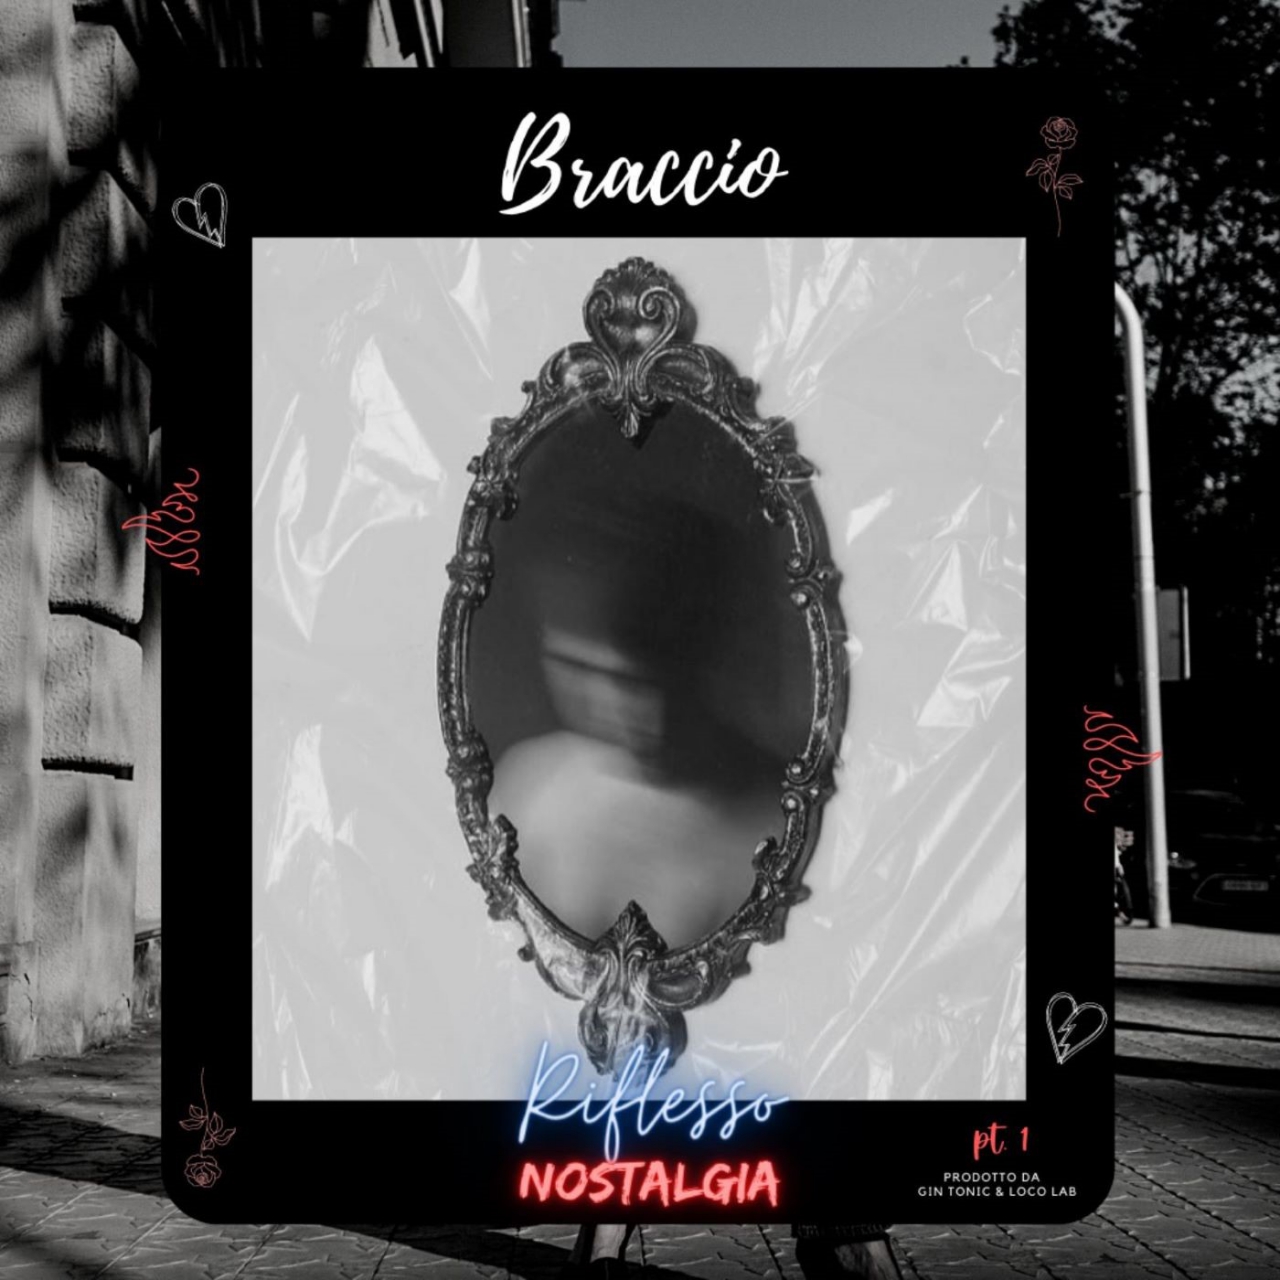 Braccio - “Riflesso”